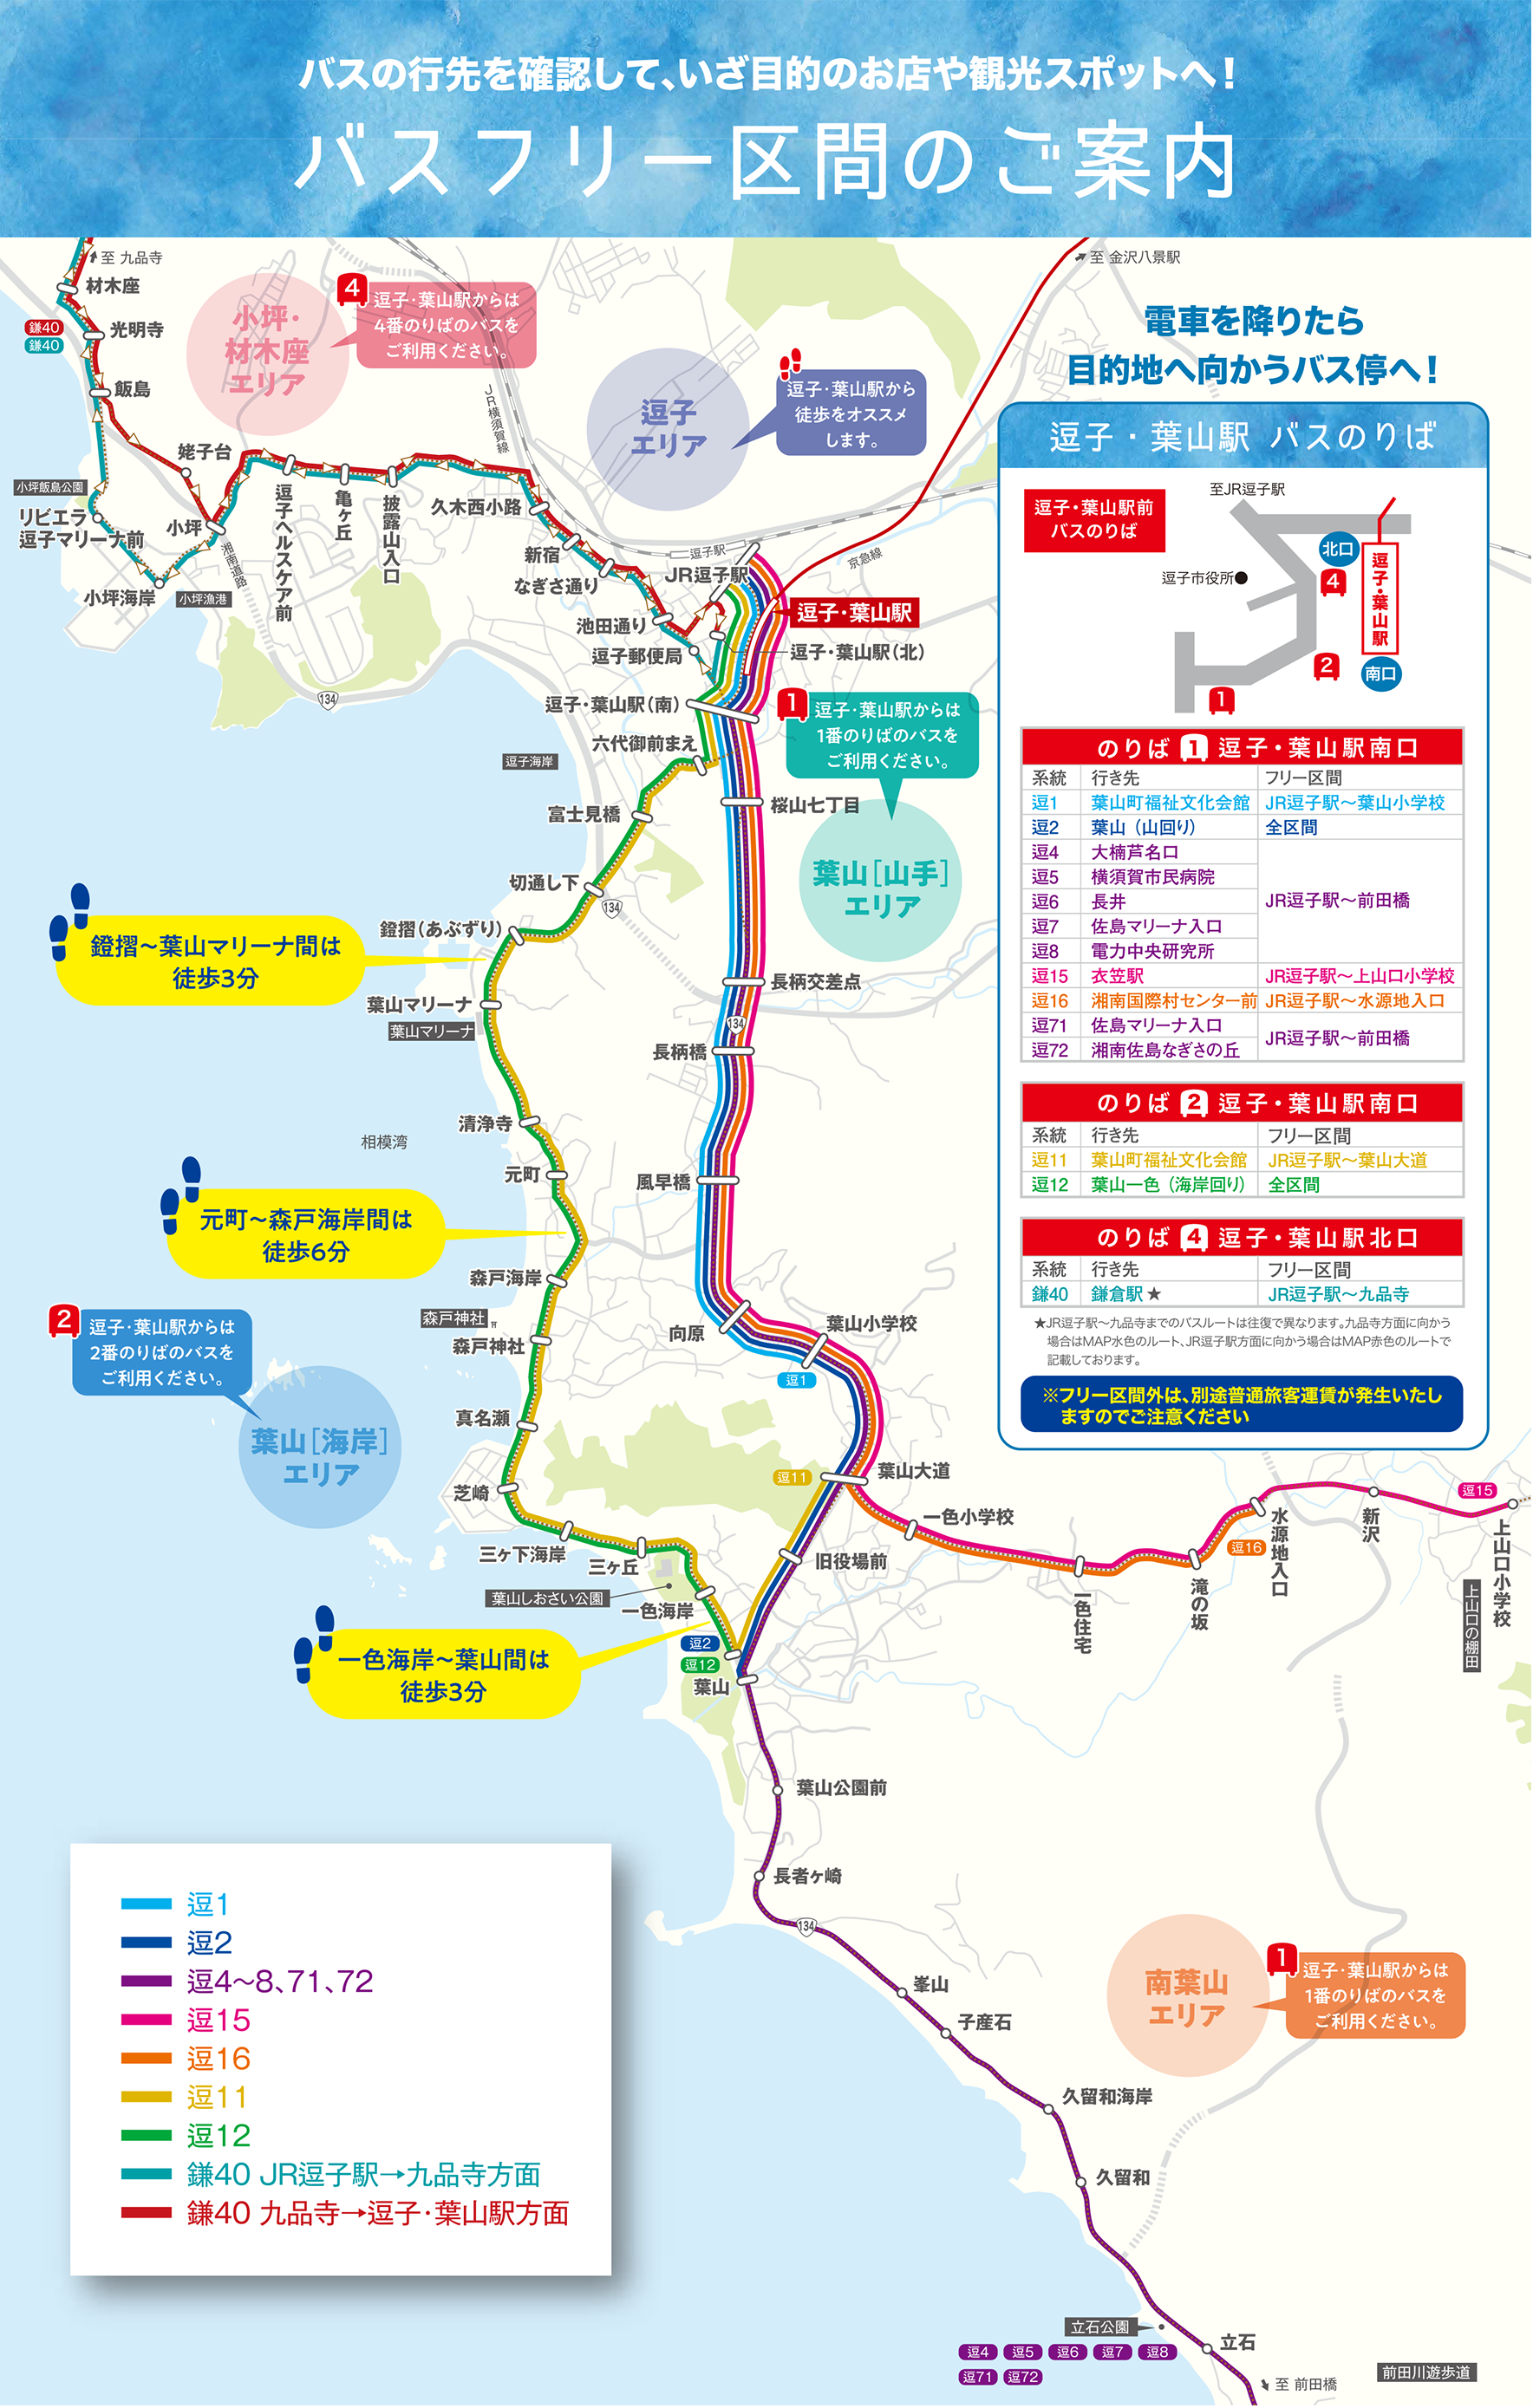 女子旅map 葉山女子旅きっぷ 京浜急行電鉄 Keikyu